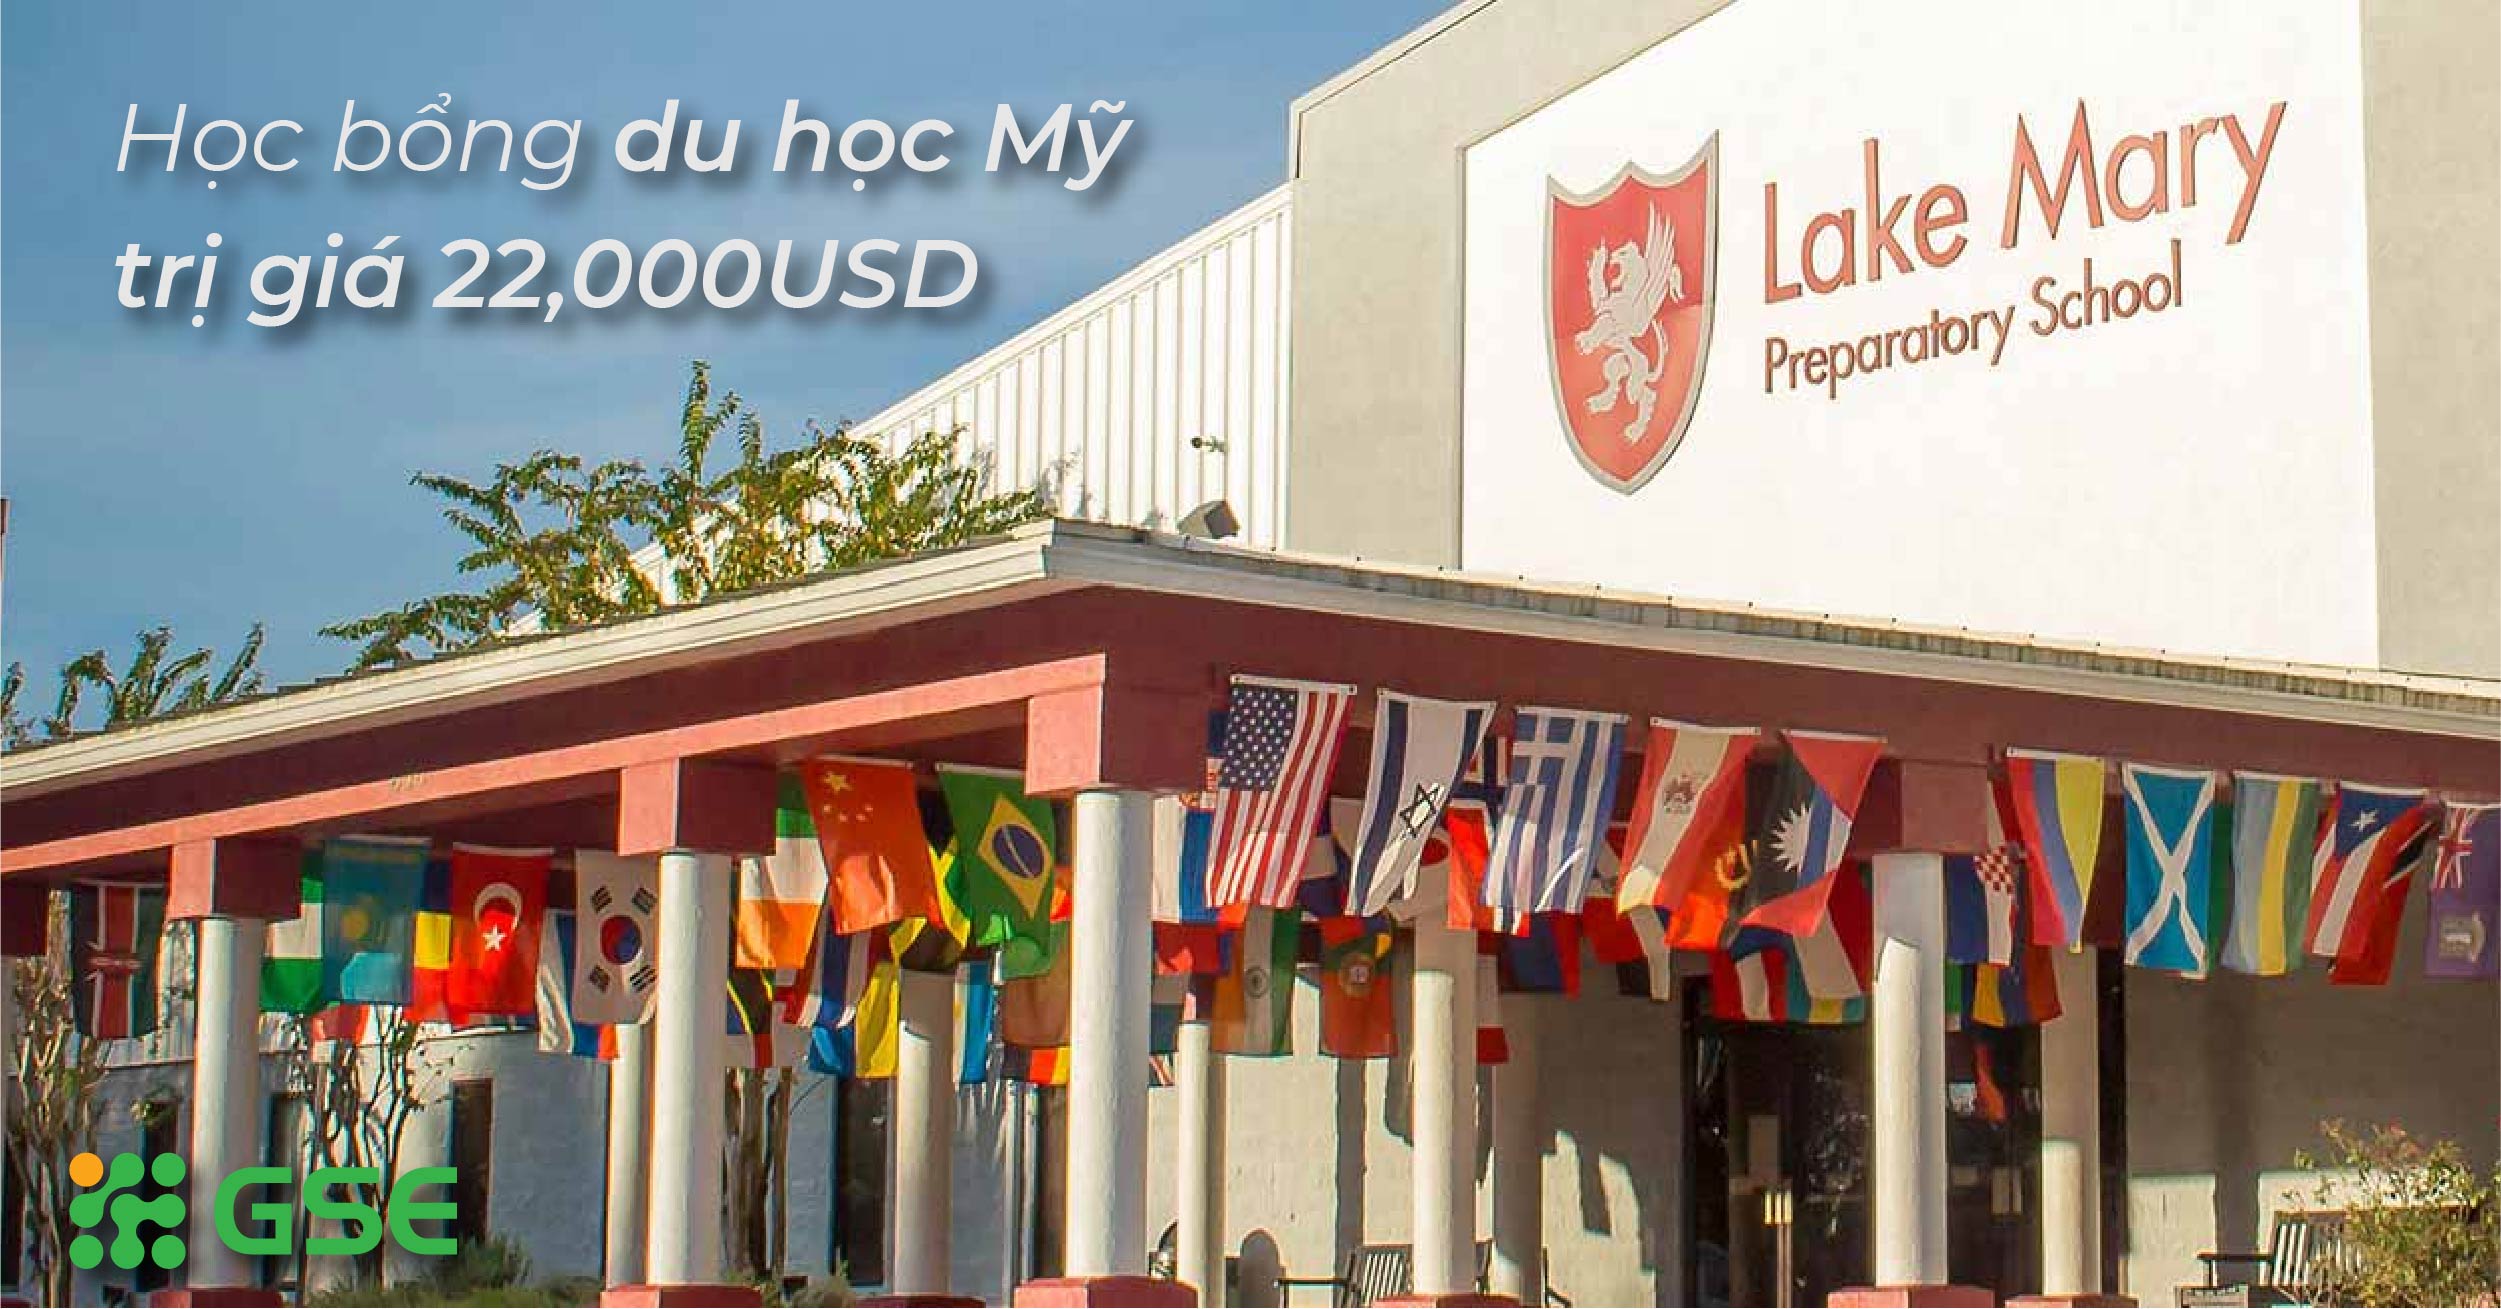 Lake Mary Preparatory School – Học bổng du học Mỹ trị giá 22,000USD